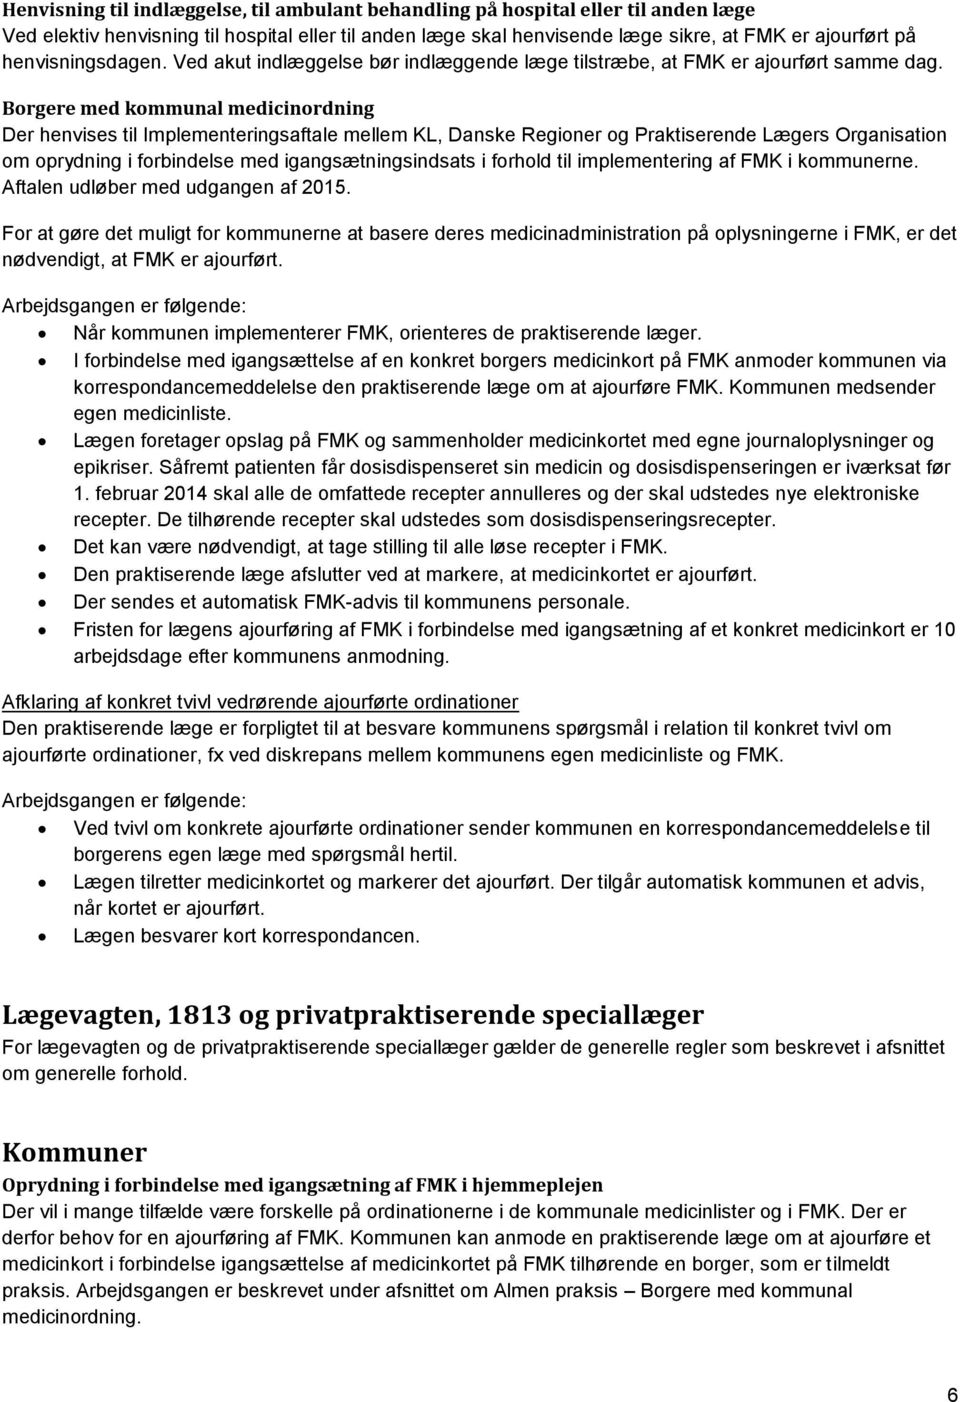 Borgere med kommunal medicinordning Der henvises til Implementeringsaftale mellem KL, Danske Regioner og Praktiserende Lægers Organisation om oprydning i forbindelse med igangsætningsindsats i